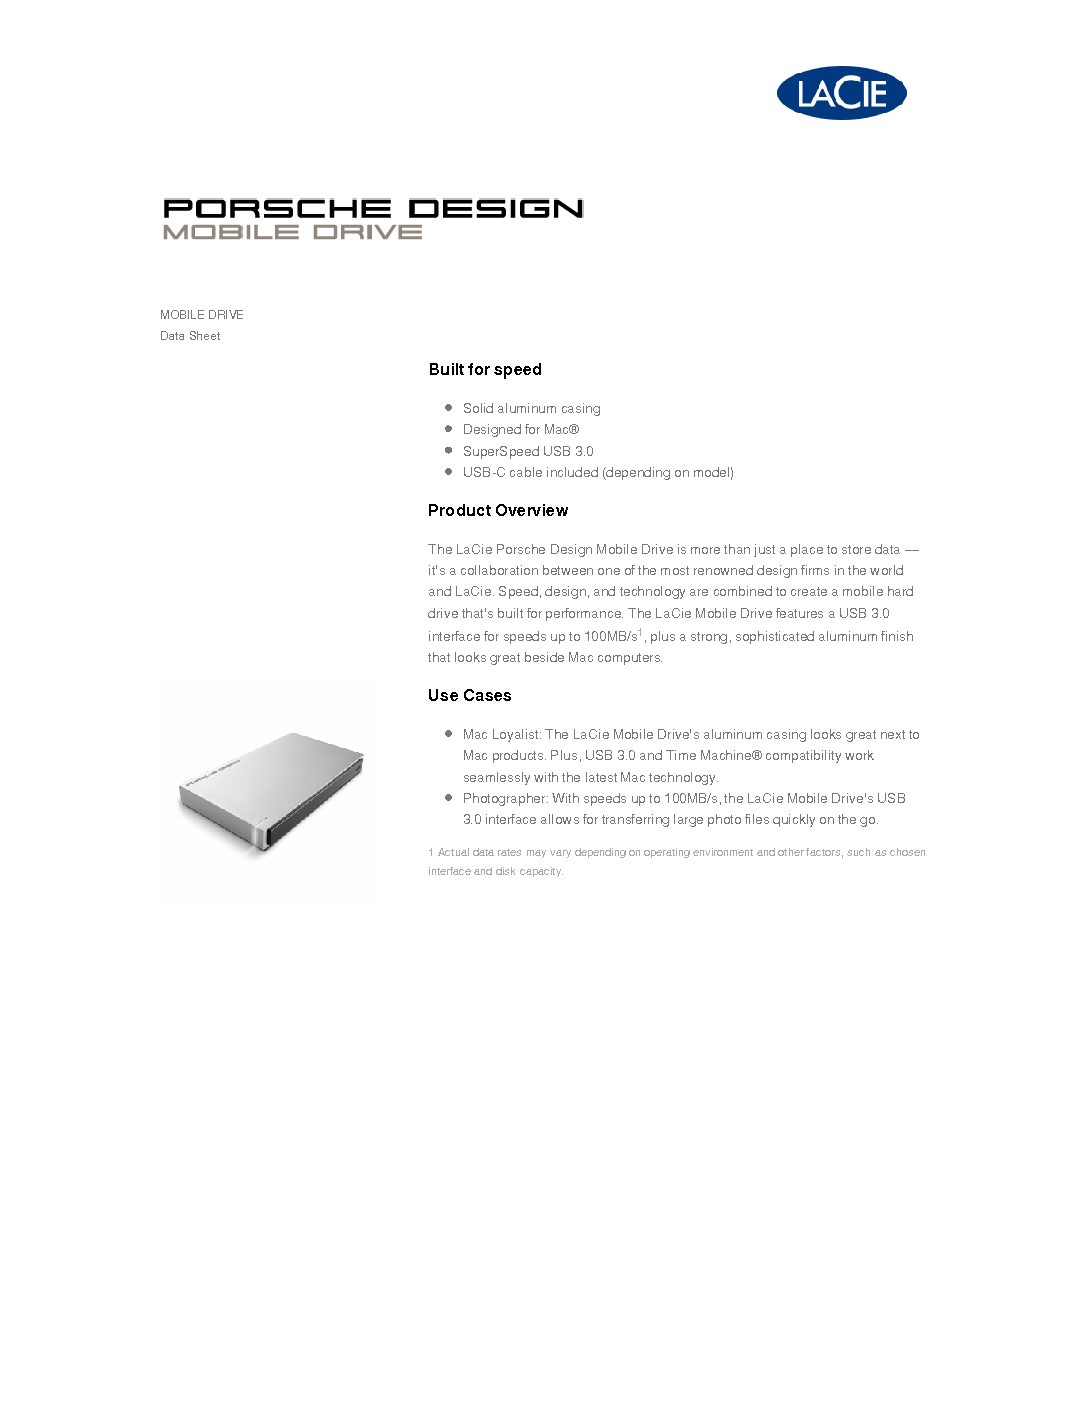 Lacie porsche design mobile drive 2tb for mac